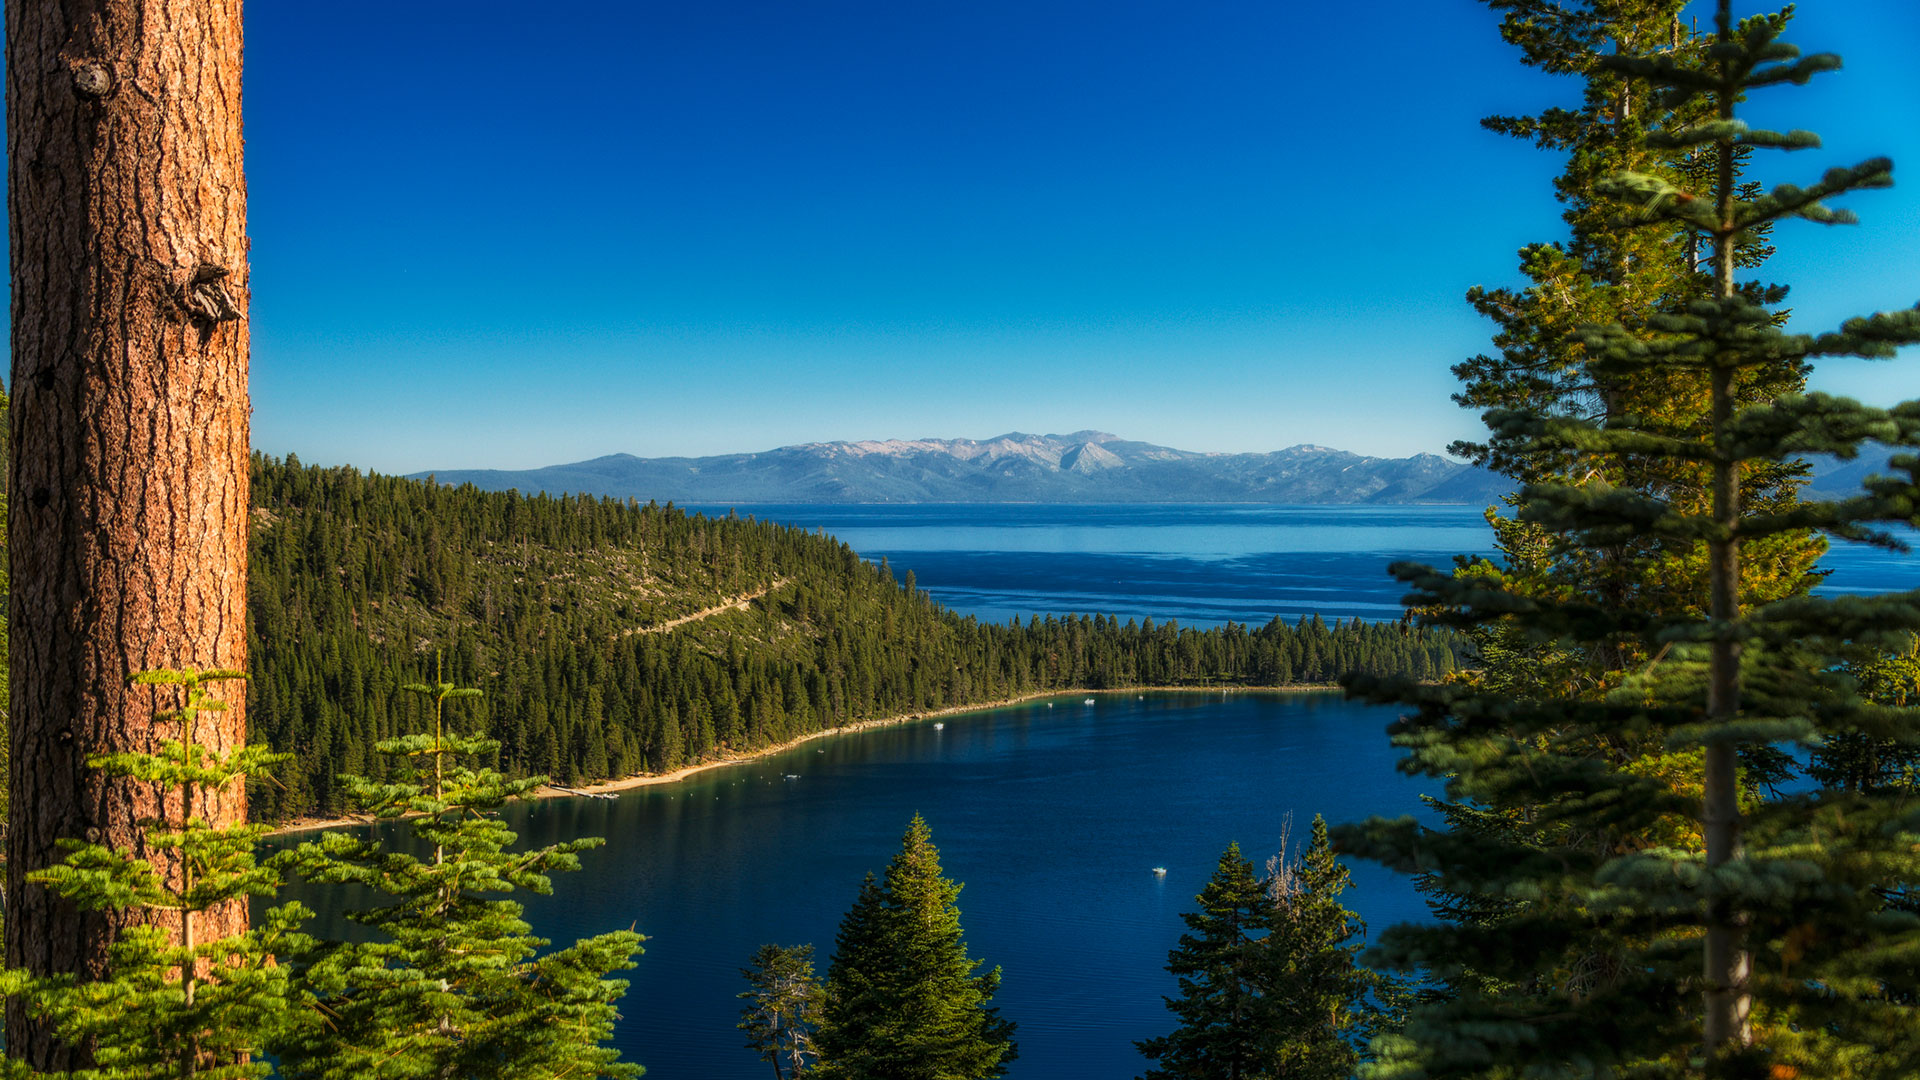 El lago Tahoe siempre ha sido una atracción popular, pero luego de la pandemia, se convirtió en víctima de la gran migración